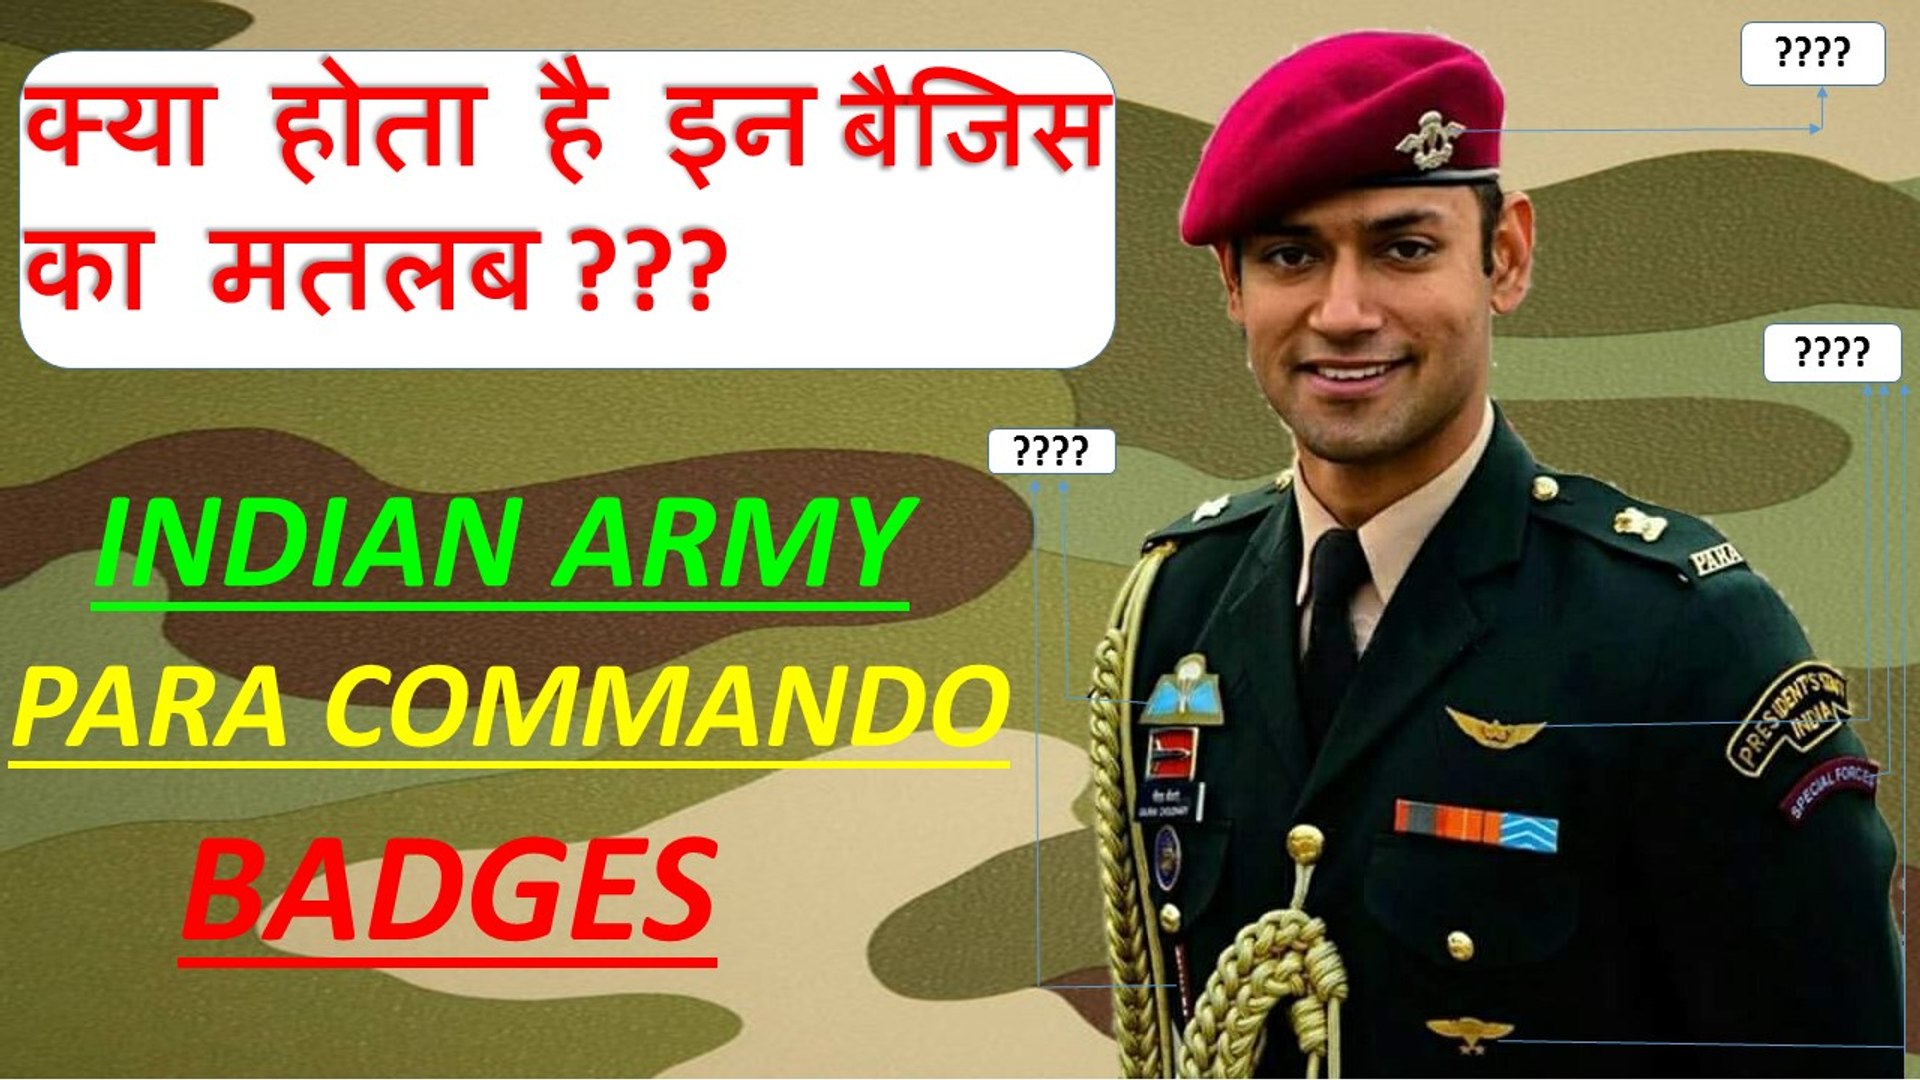 Para Commando (SF)- Badges, Indian army parachute regiment ।जानिए पैरा  कमांडोस के बैजिस के बारे मे। - video Dailymotion